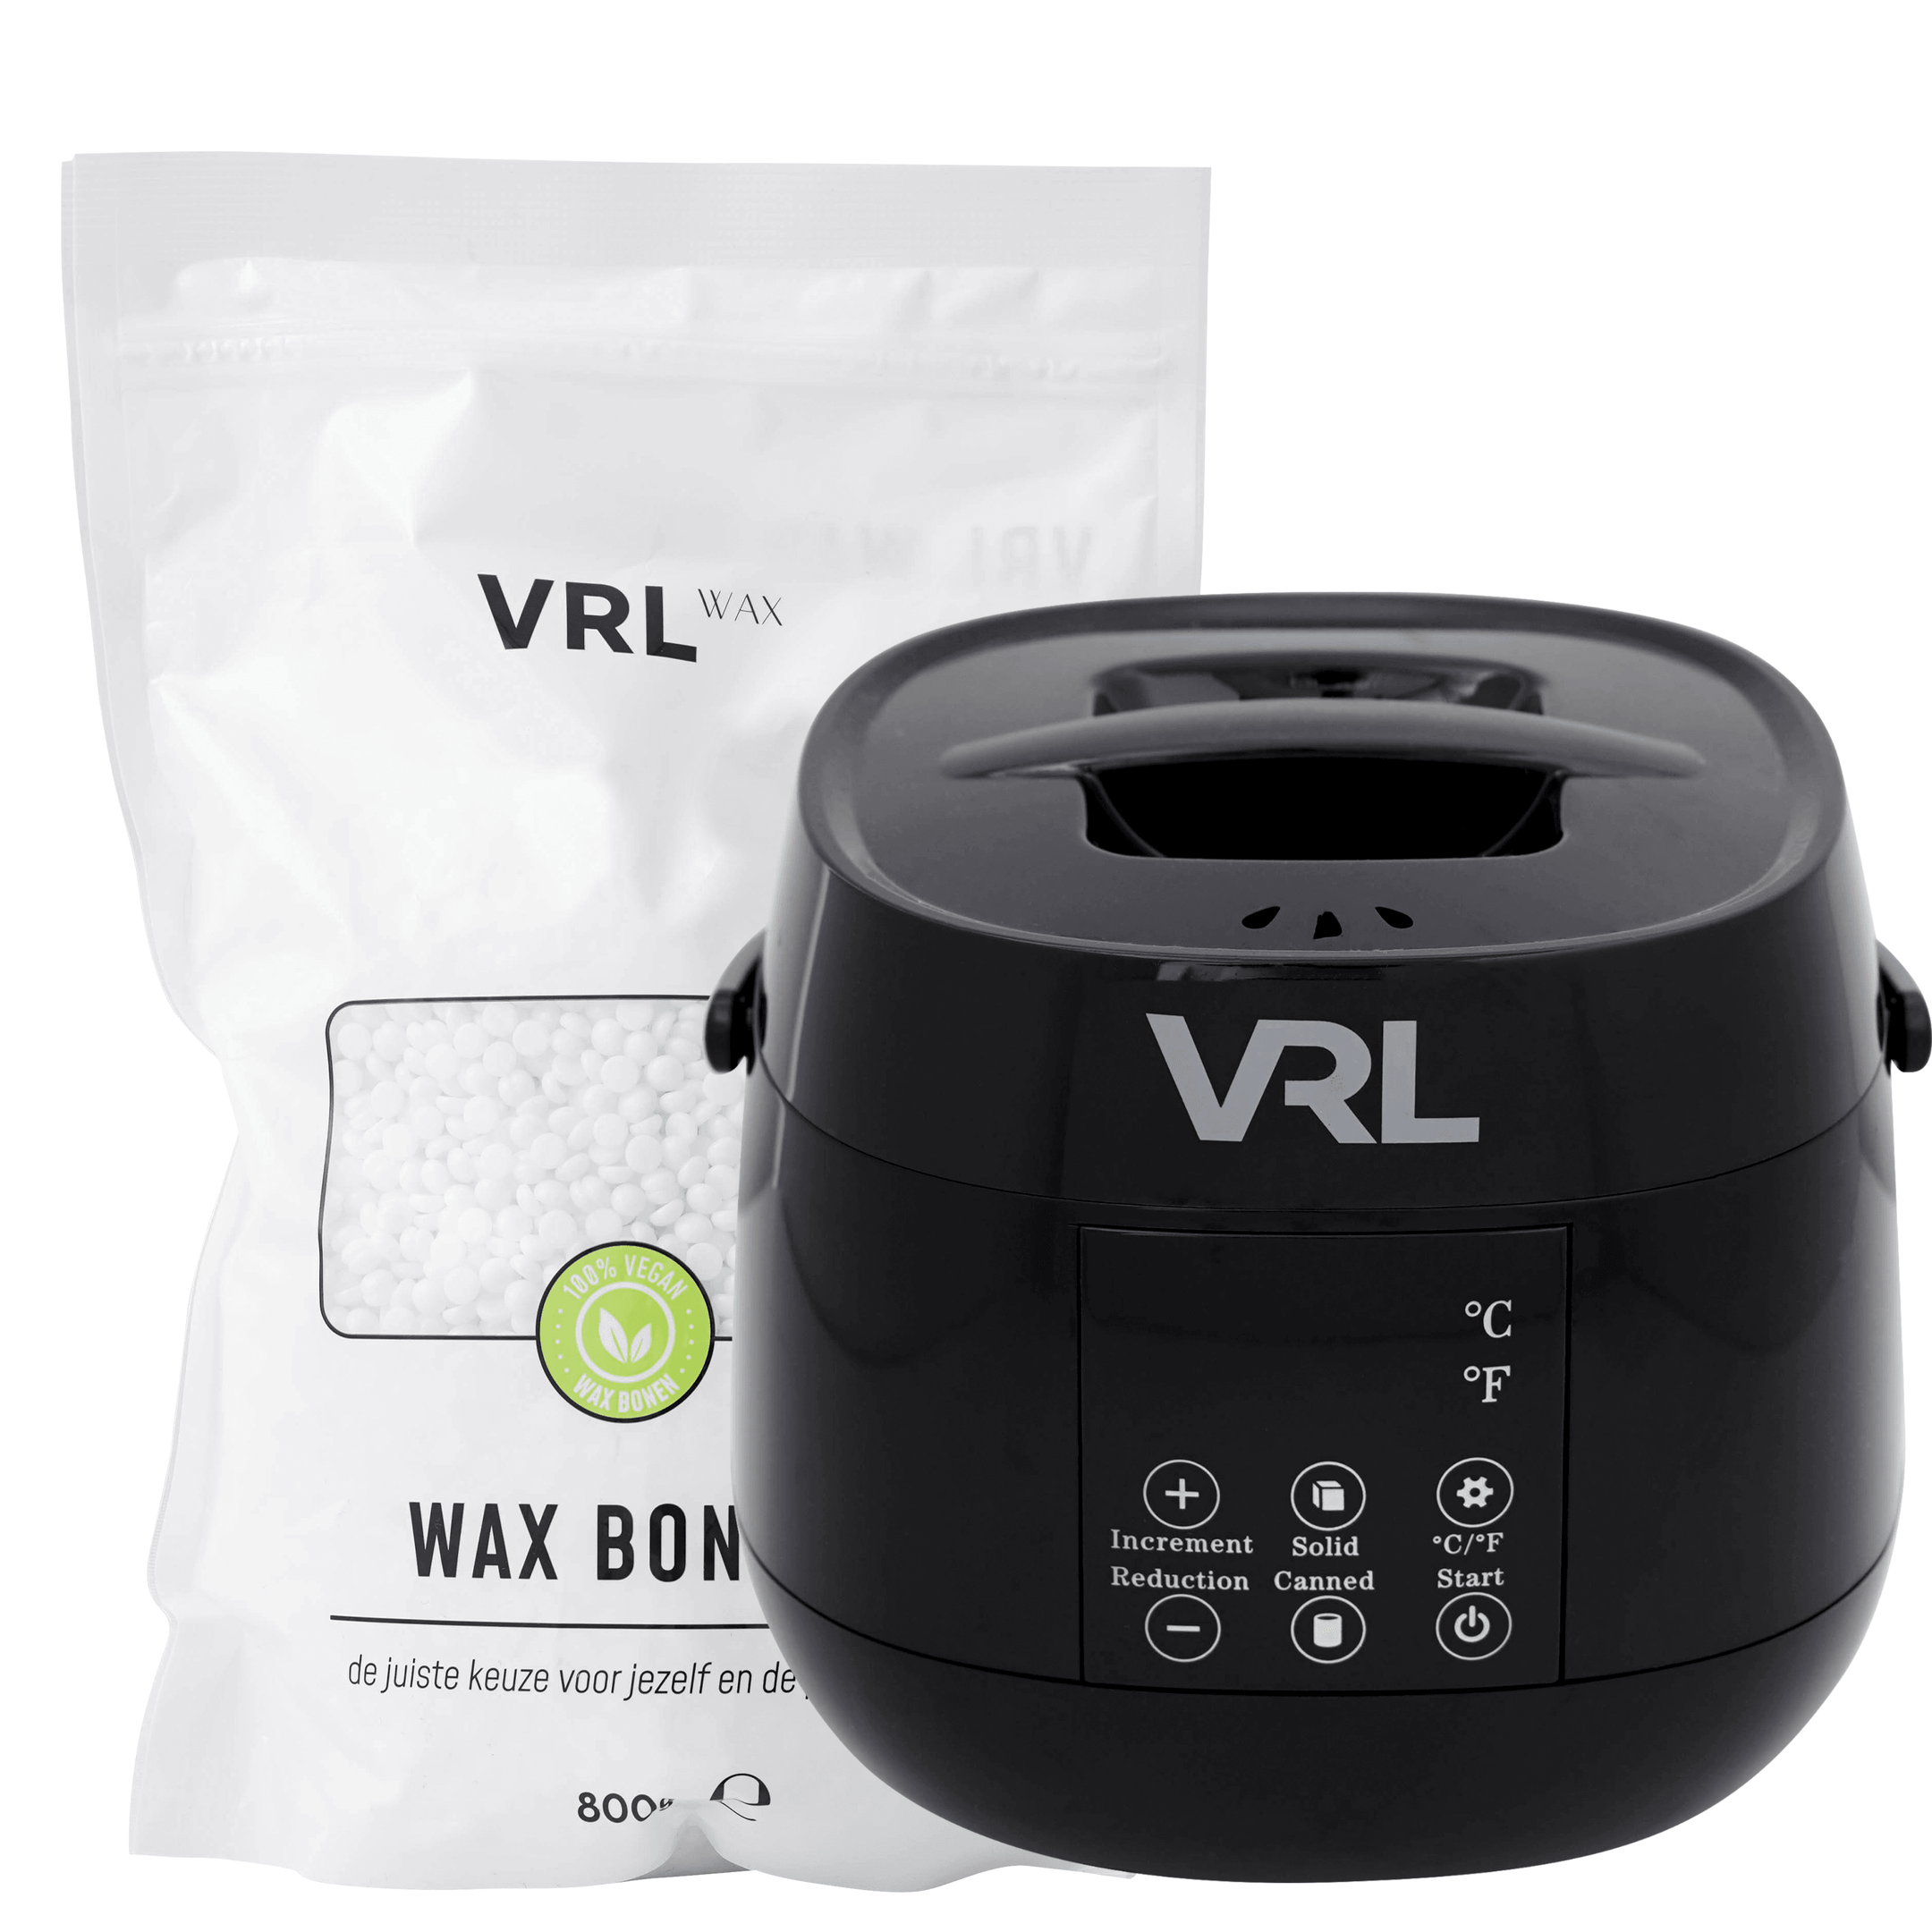 VRL Smart Wax Apparaat - Compleet met Kokos Wax Bonen - VRL WAX